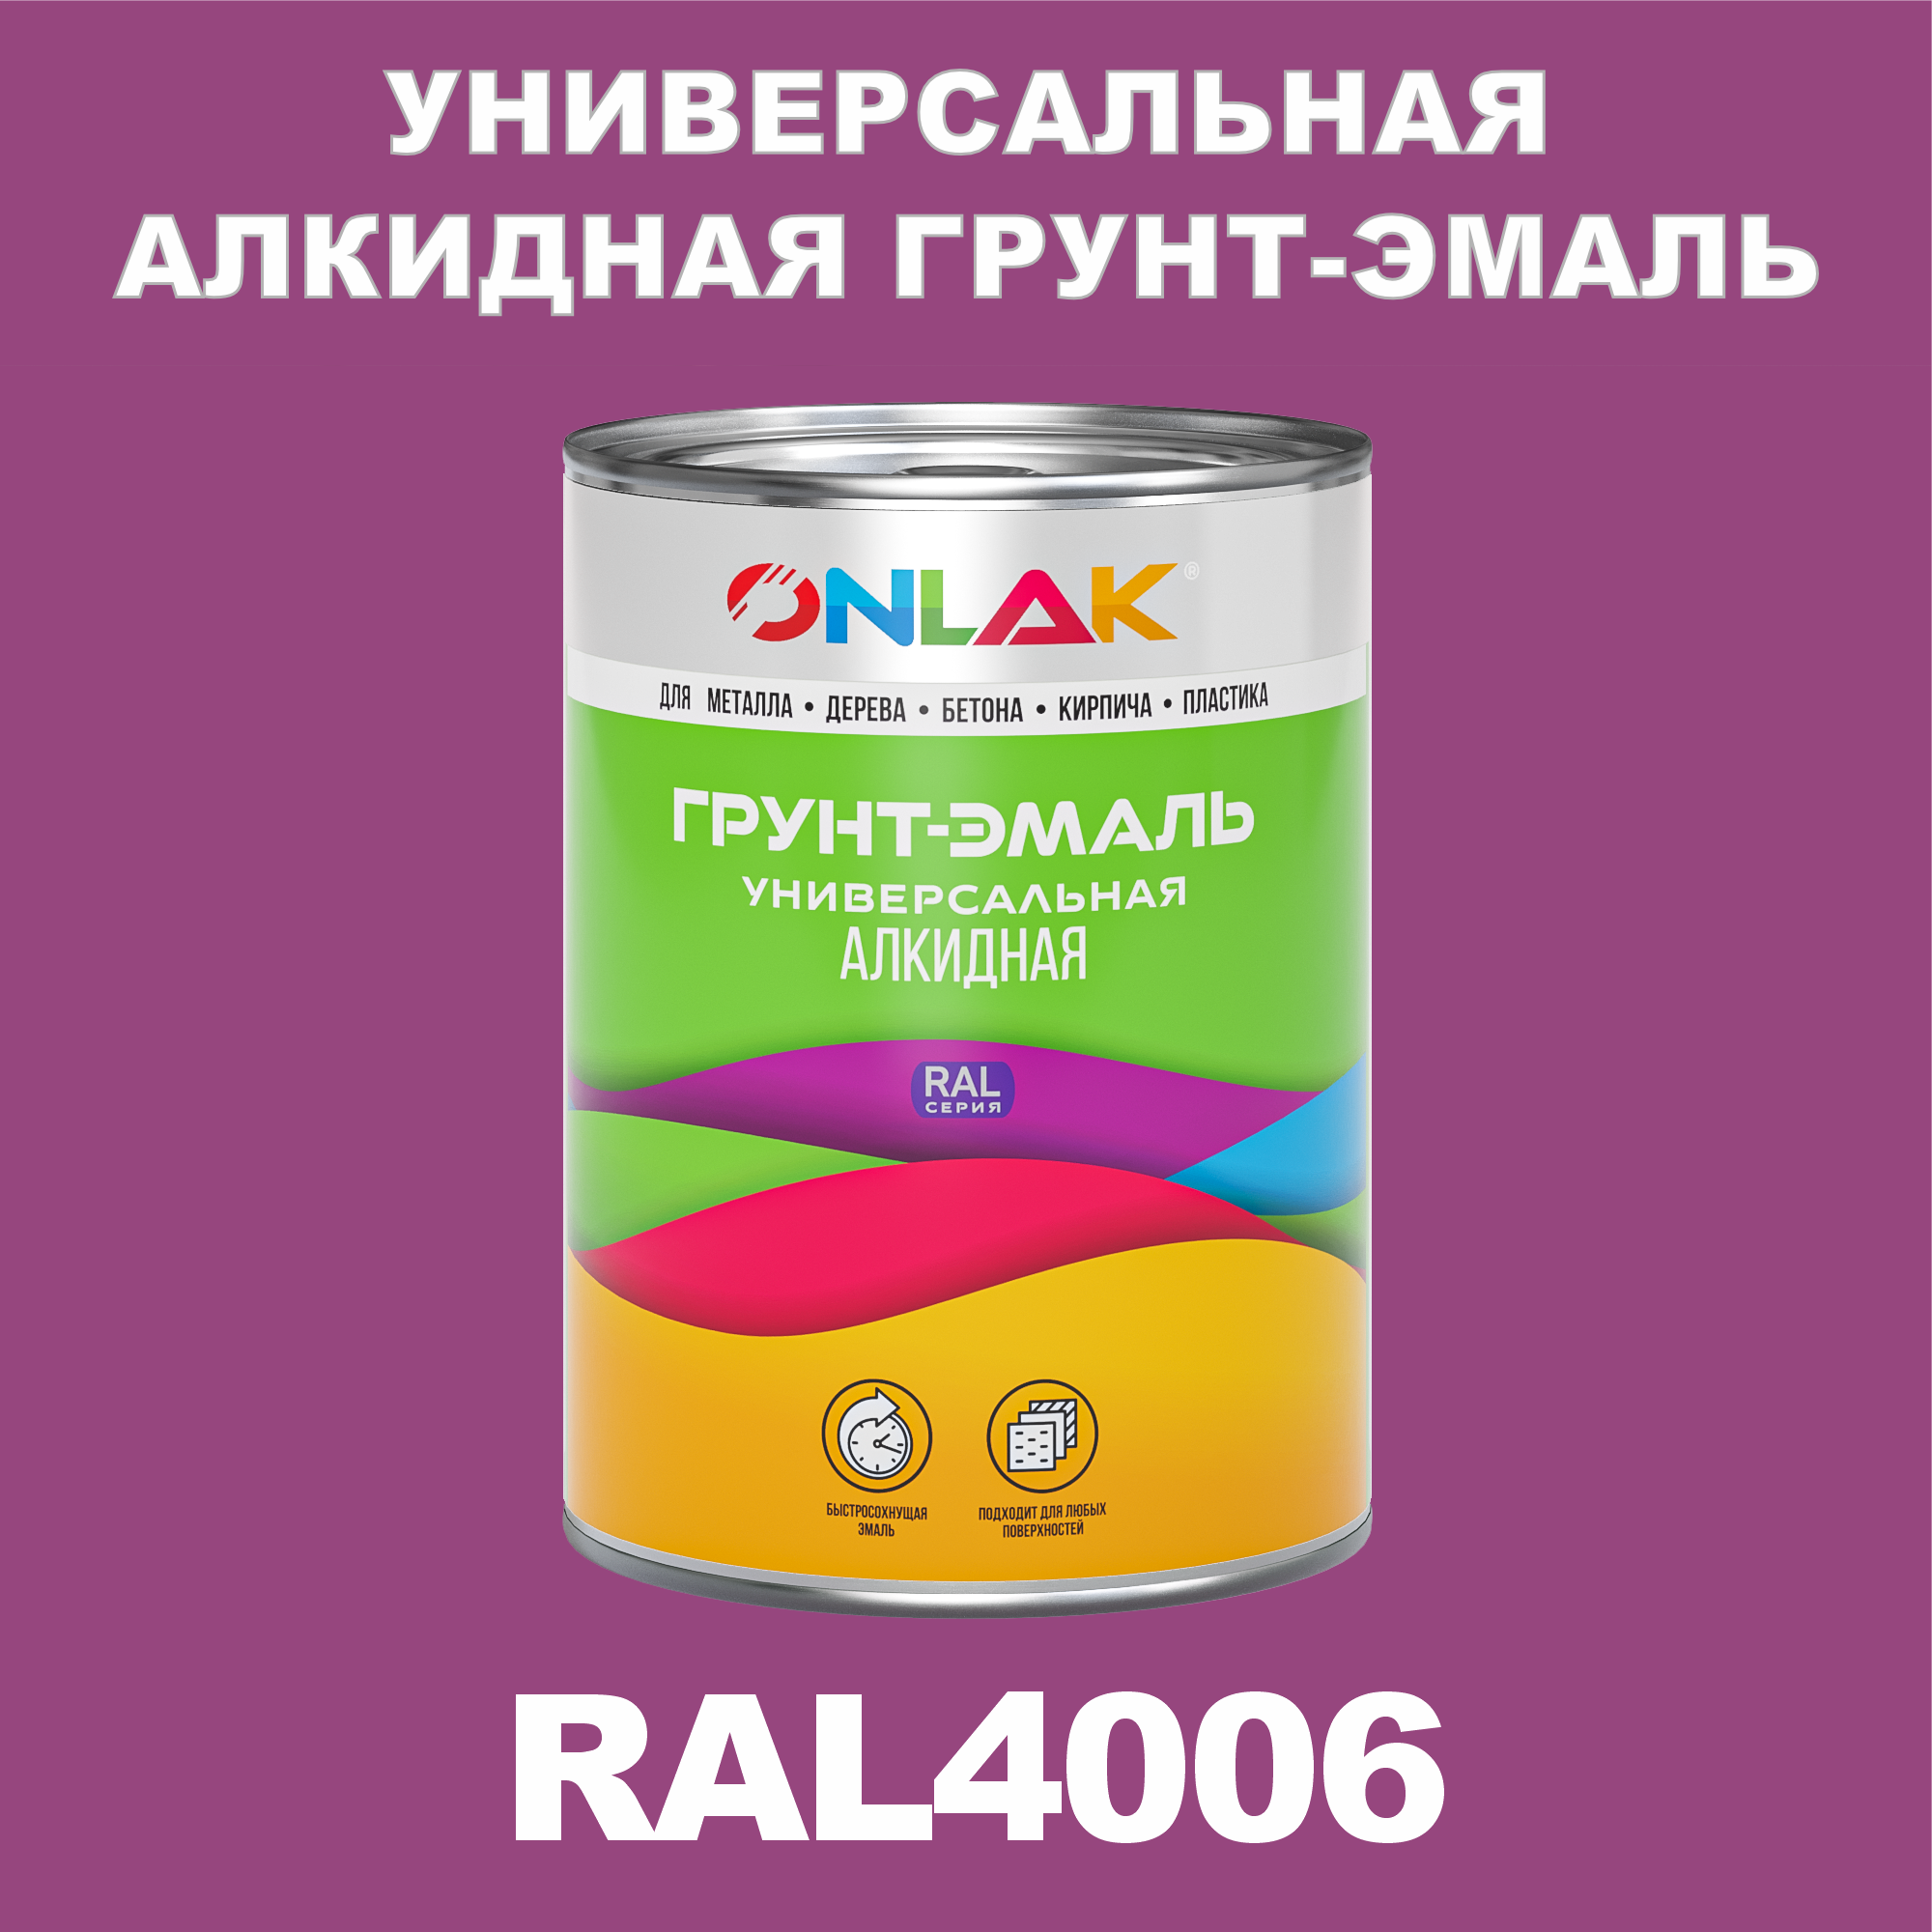 Грунт-эмаль ONLAK 1К RAL4006 антикоррозионная алкидная по металлу по ржавчине 1 кг антикоррозионная грунт эмаль onlak ral 4005 фиолетовый 662 мл